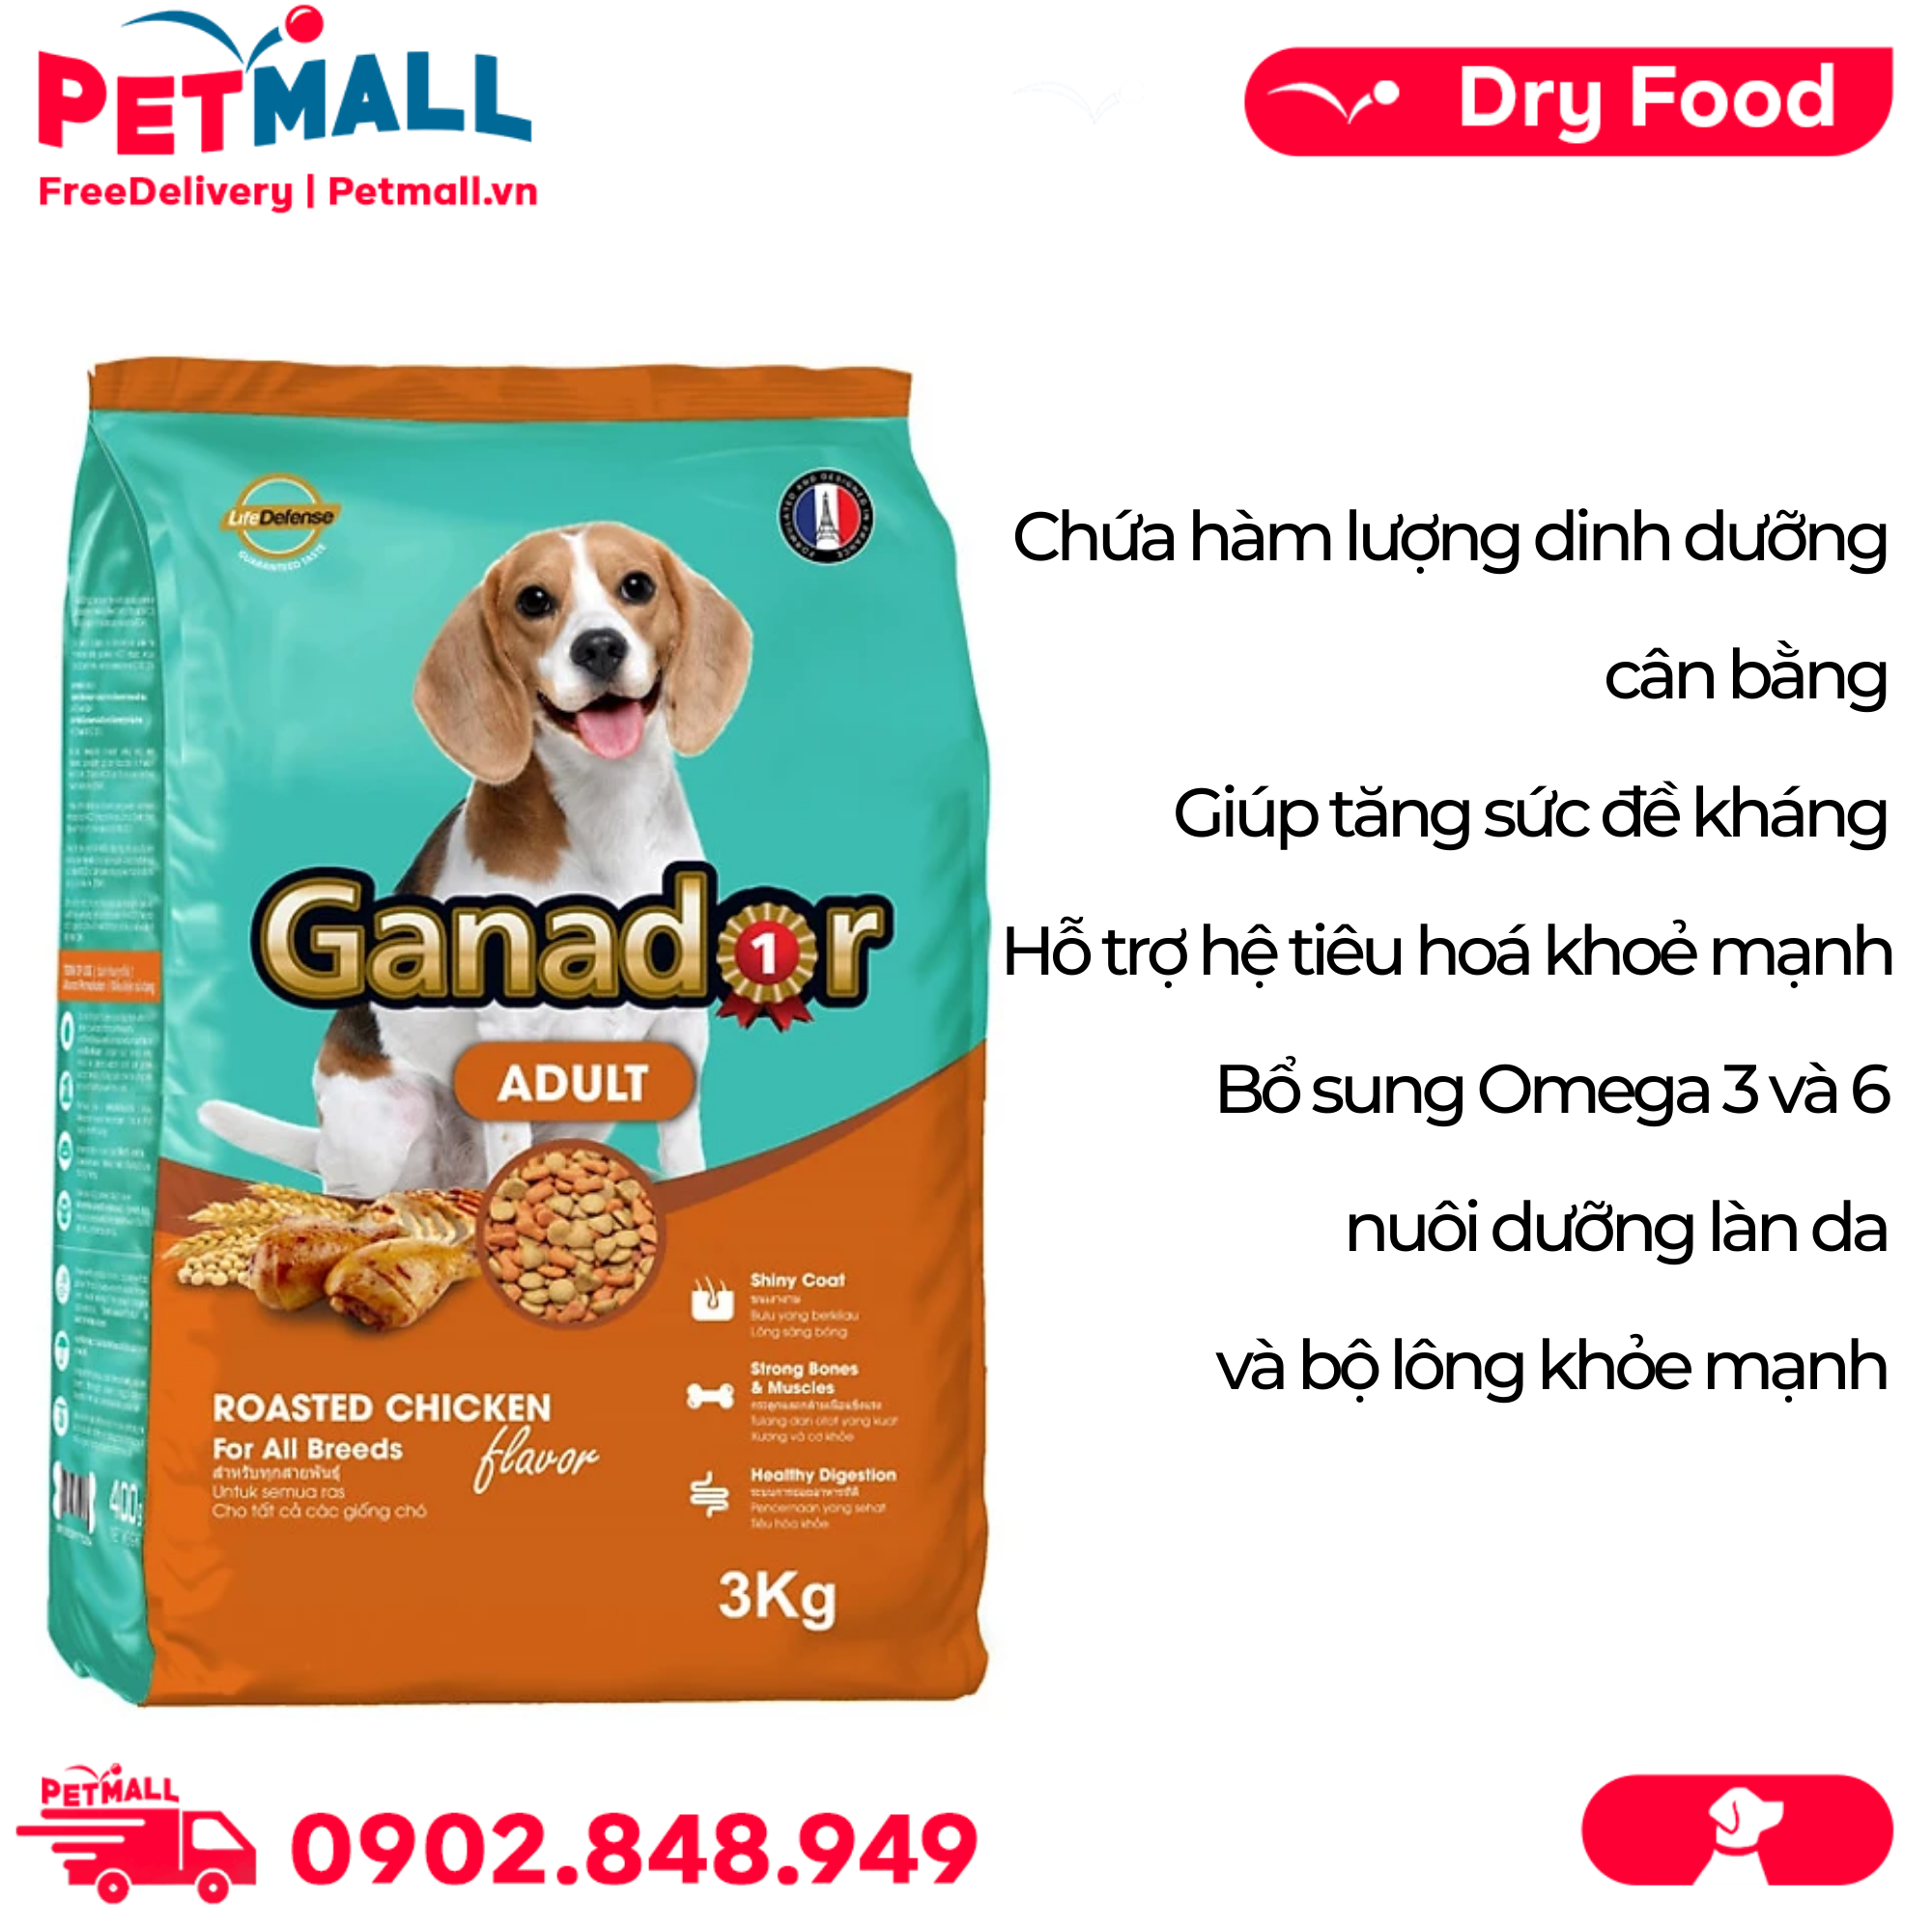 GANADOR là một thương hiệu thức ăn cao cấp dành riêng cho chó, sử dụng các thành phần đạt chuẩn và đảm bảo chất lượng của thức ăn. Hãy xem những hình ảnh độc đáo để tìm hiểu thêm về sản phẩm này.